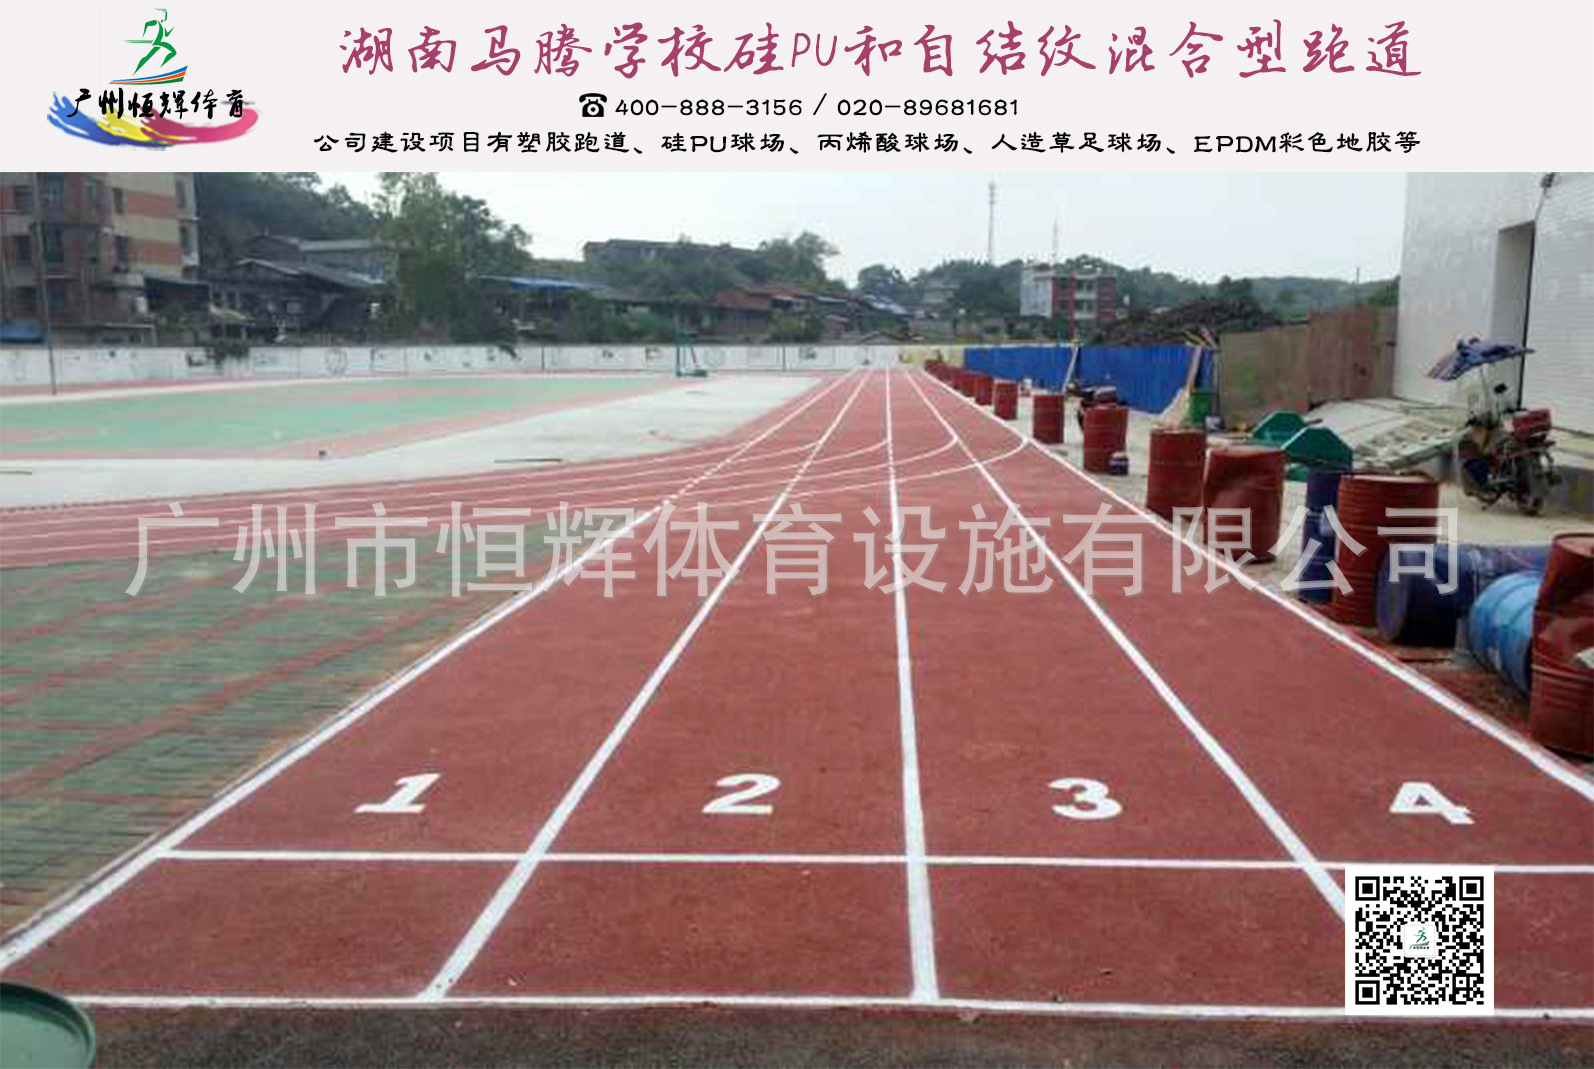 硅pu厂家的湖南马腾学校硅PU、自结纹塑胶跑道项目